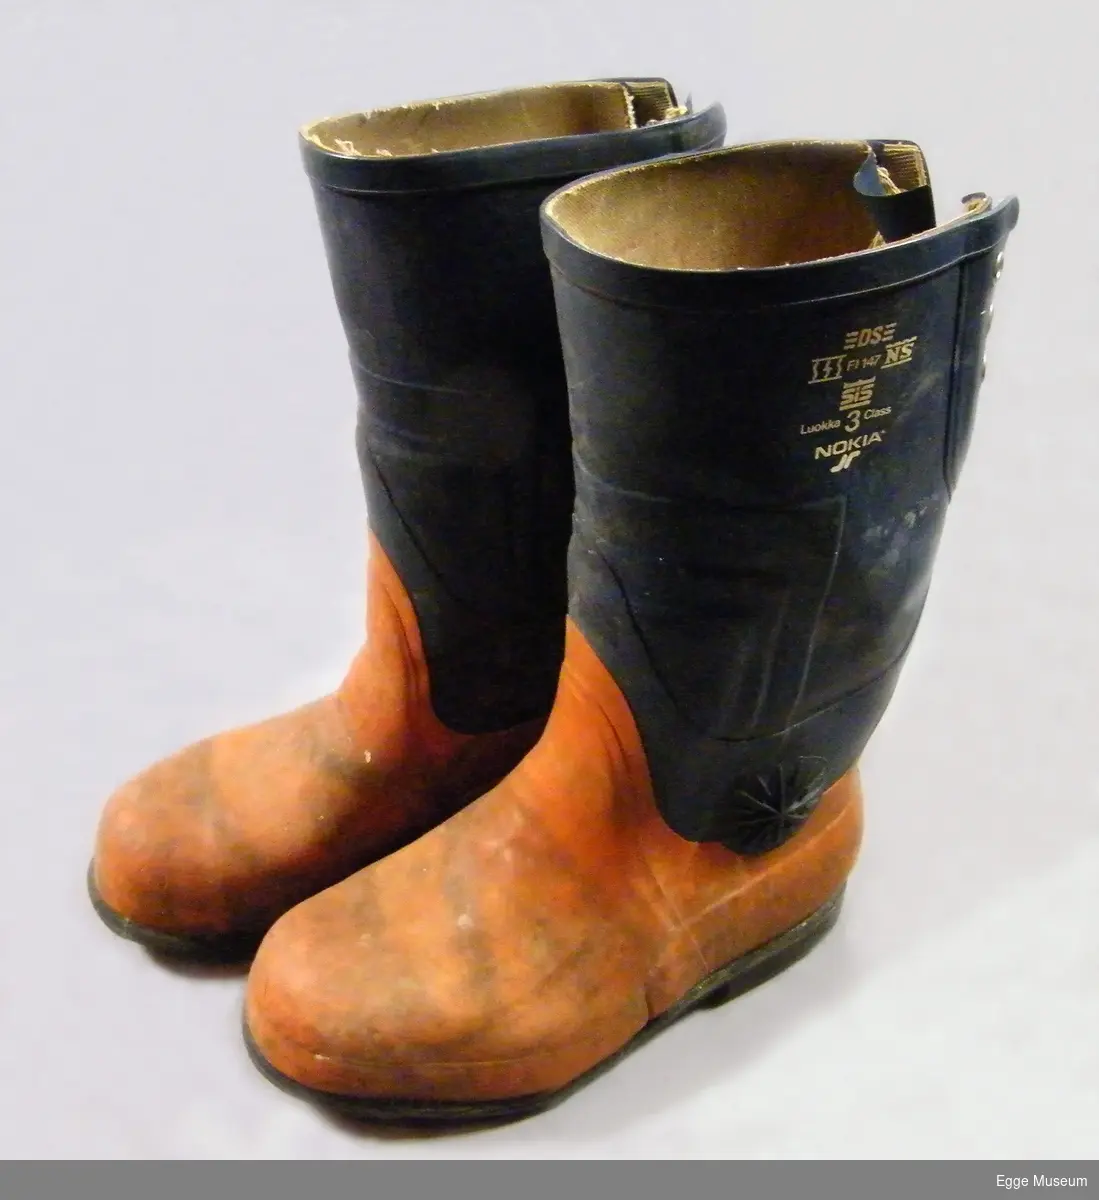 Vernestøvler for skogsarbeid fra 1980-tallet. Utvendig er støvlene trekt med gummi. Gummien er limt og sveiset sammen, muligens smeltet sammen over de områdene hvor gummien er tykkest. Flere lag? Tykkest gummi over typiske viktige verneområder, som tå- og hæl. Det er også innstøpt et stålparti i tåpartiet. Noe tykkere også oppover deler av legg og vrist. Anklene er beskyttet med pålimte gummiringer (i stjernemønster). Begge støvlene har skader av motorsag. Skaftet i støvlene er blått, foten i oransje farge. Støvlene kan snøres sammen med lisser på baksiden av støvlene (toppen av skaftet). Kraftig gripemønster på sålene med små hull (beregnet for pigging av støvlene). Foret med lerretsstoff. Ingen løse såler. Størrelse 41.